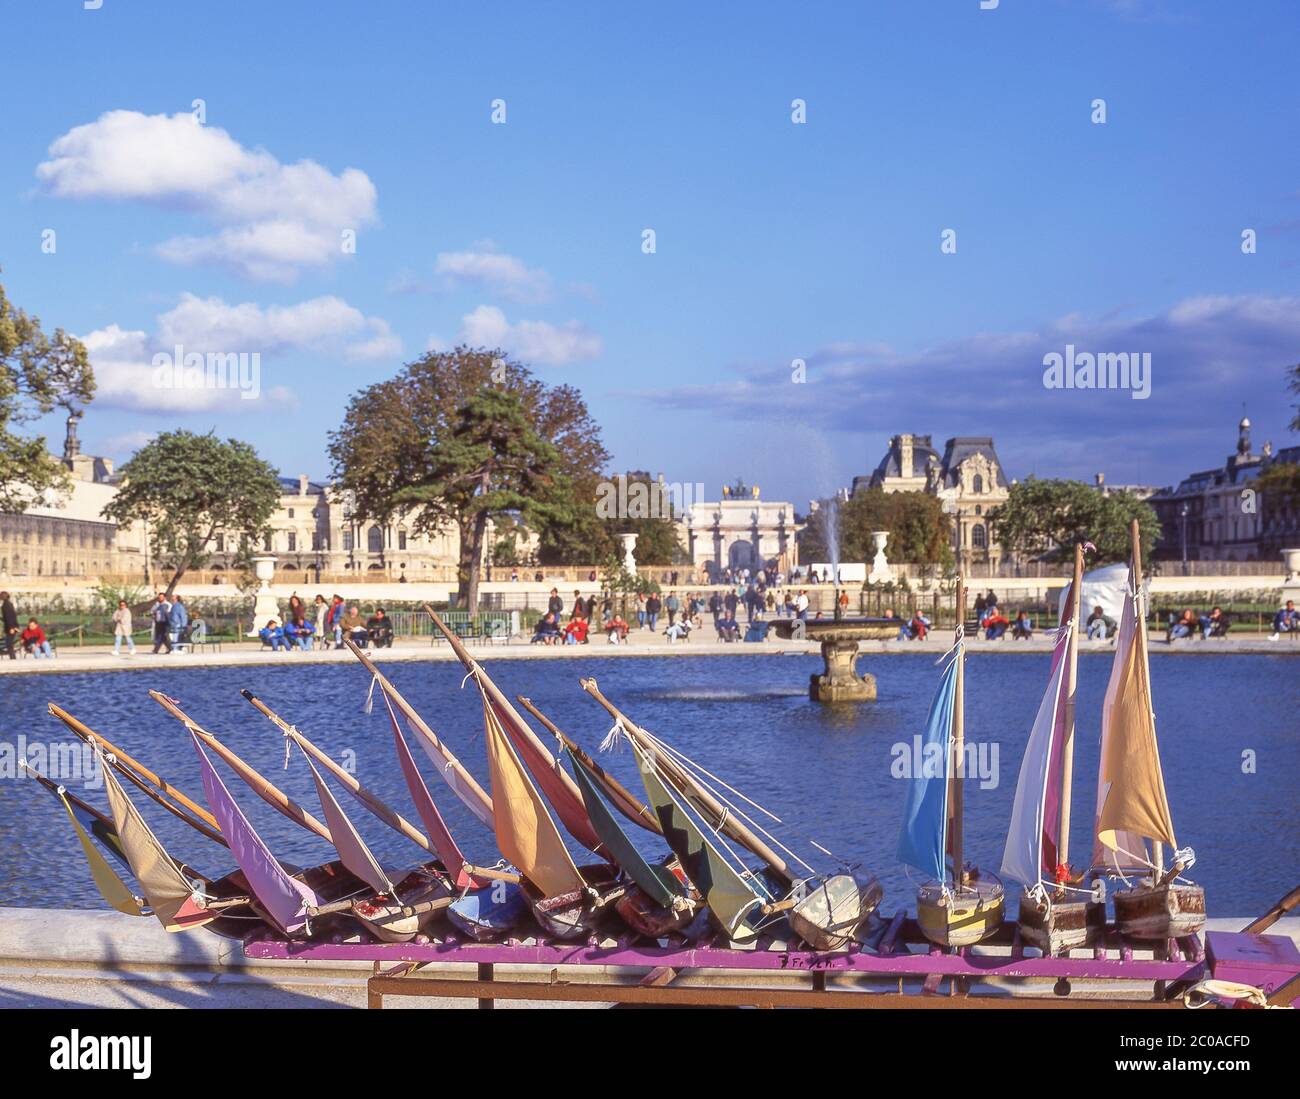 Modello di barche in legno di Grand Bassin Rond, Jardin des Tuileries (Giardino delle Tuileries), 1 ° arrondissement, Parigi, Île-de-France, Francia Foto Stock